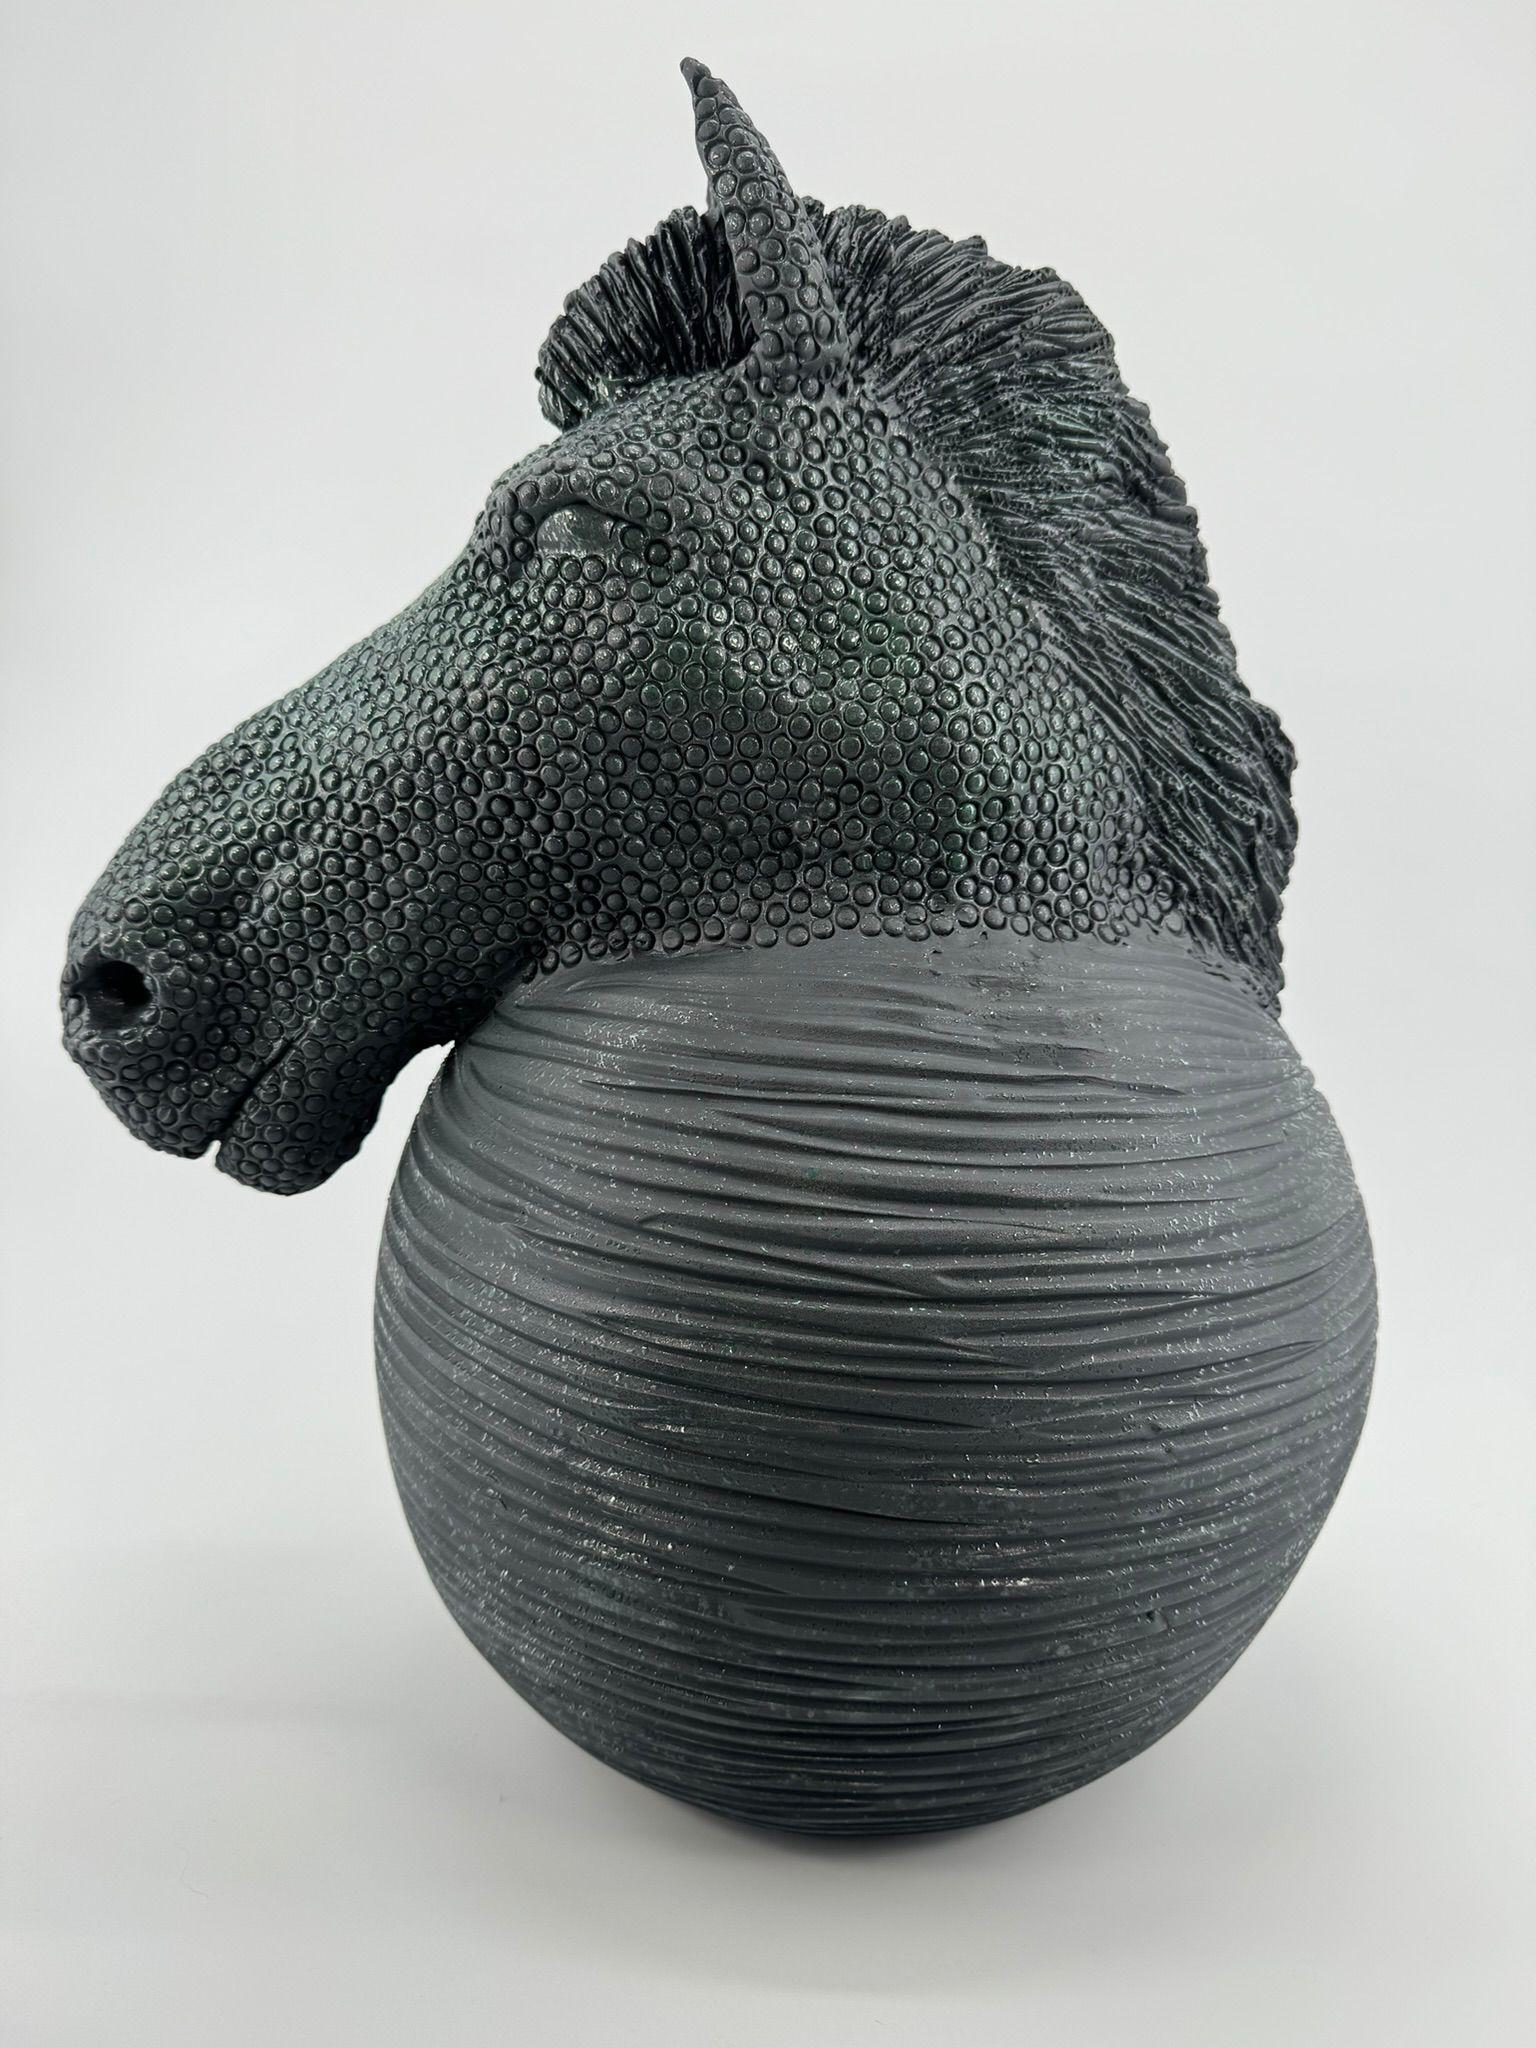 Das Stück ist eine einzigartige Darstellung eines Pferdes in einer modernen Form. Das Tier wird in behutsamer Handarbeit aus Ton hergestellt und von Hand bearbeitet. Alle Stücke von Mosche Bianche sind einzigartig, da sie ohne jegliche Form